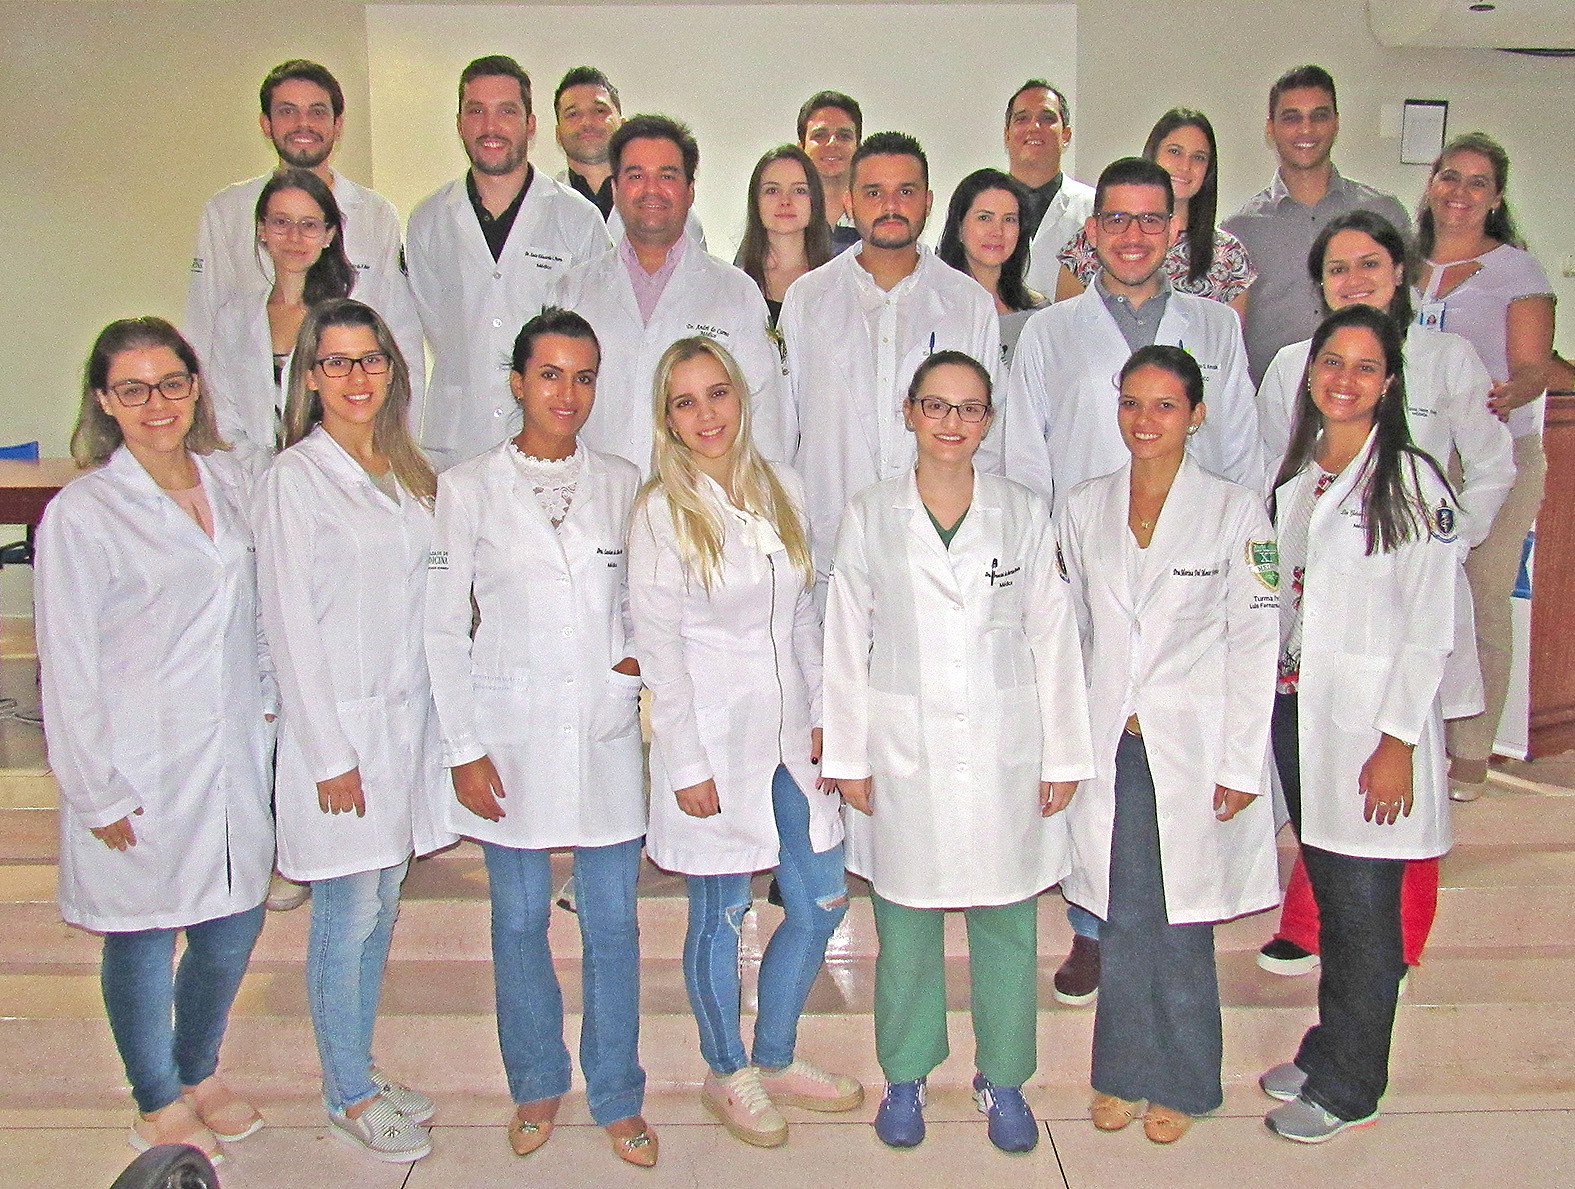 Médicos que irão cursar a Residência Médica na Santa Casa de Franca a partir de 2019 (Foto: Reprodução)